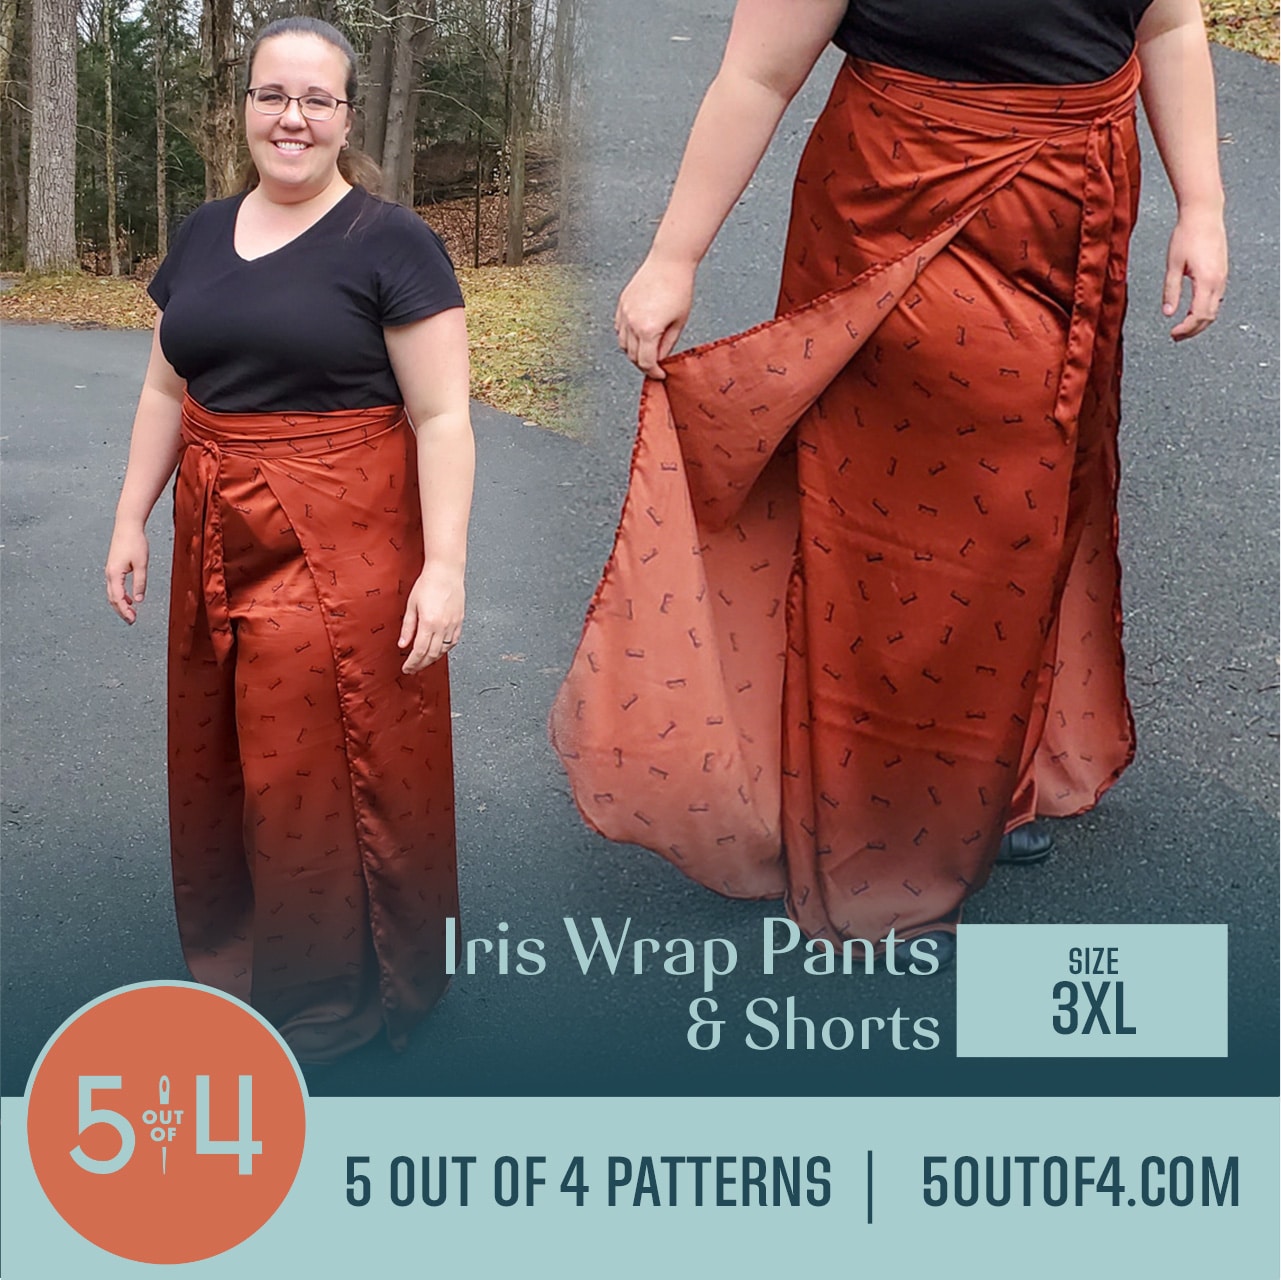 Iris Wrap Shorts, Capris, and Pants